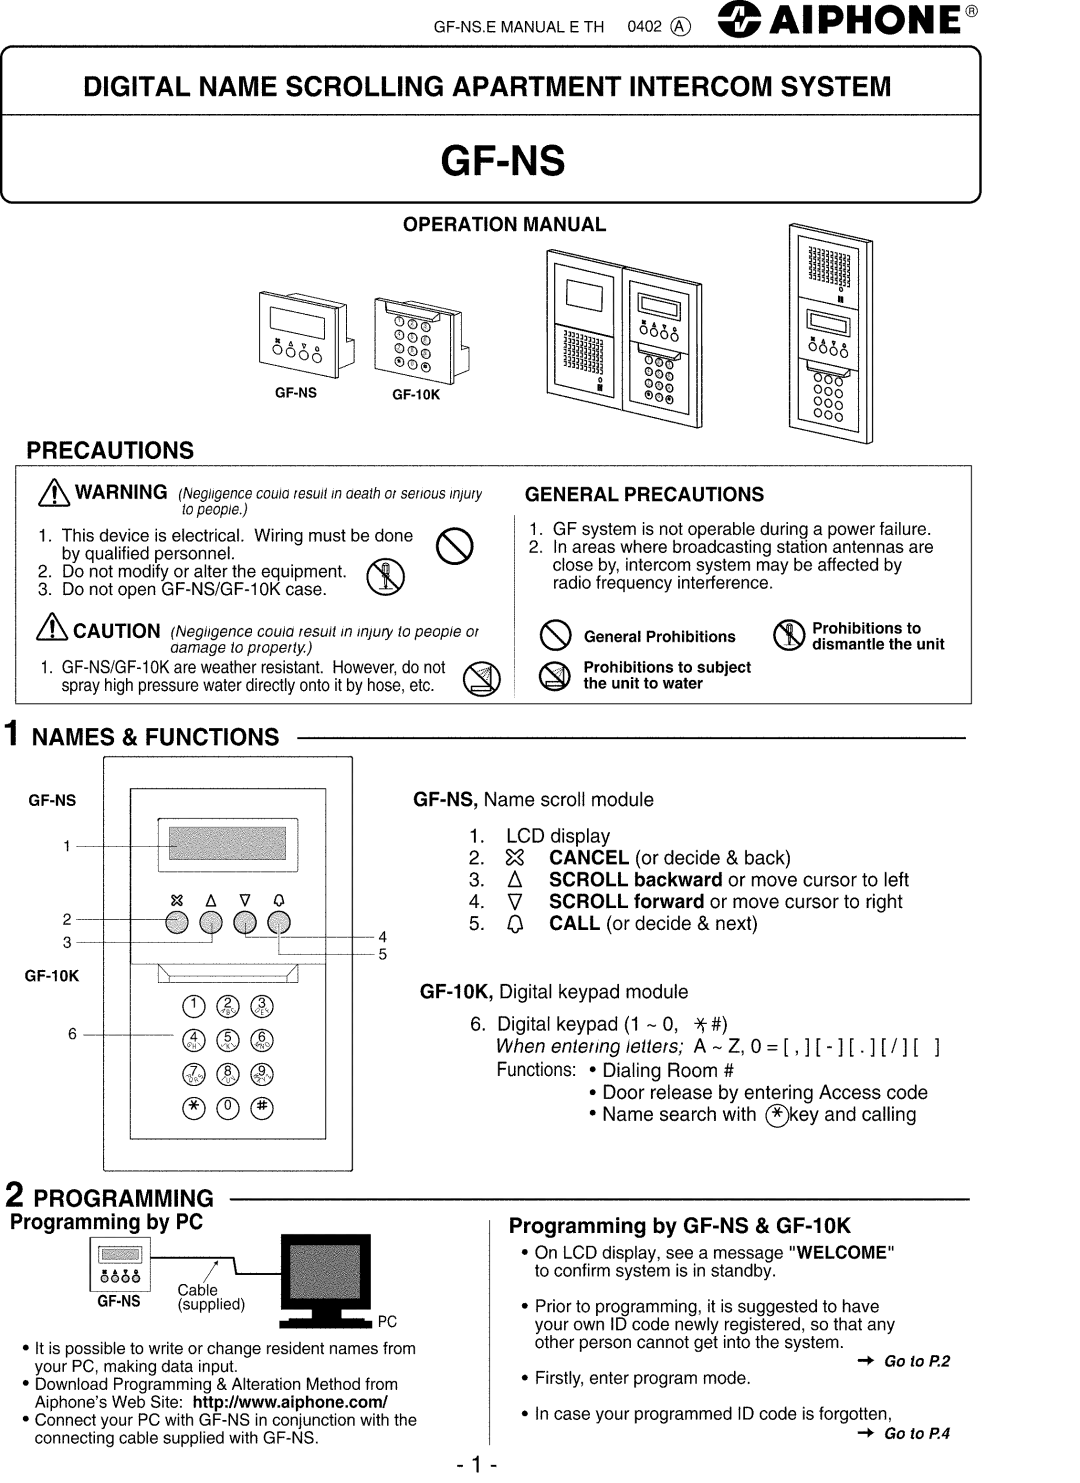 Aiphone GF-NS manual 